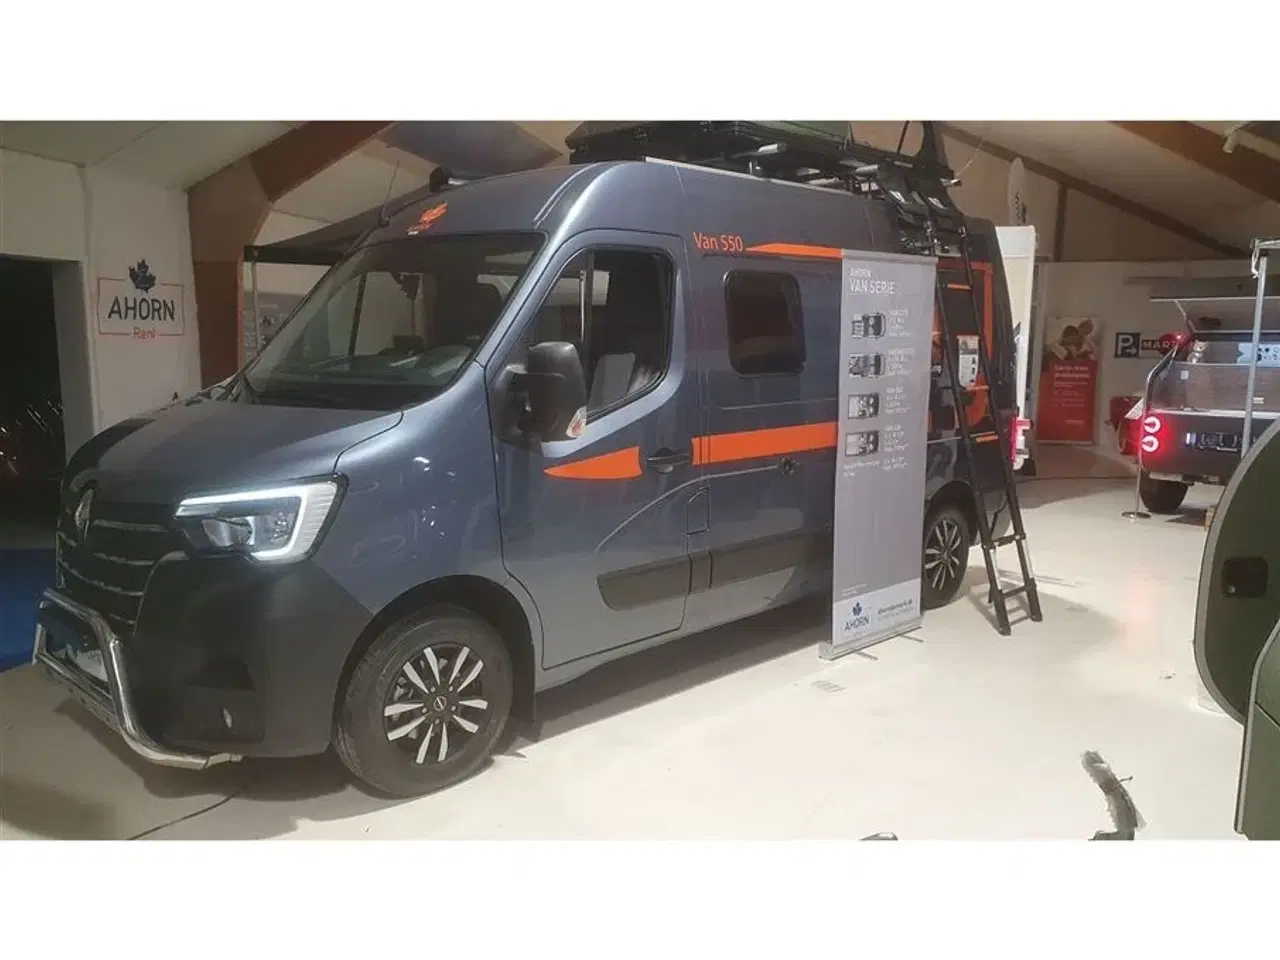 Billede 3 - 2023 - Ahorn VAN 550   Van 550 med masser af udstyr